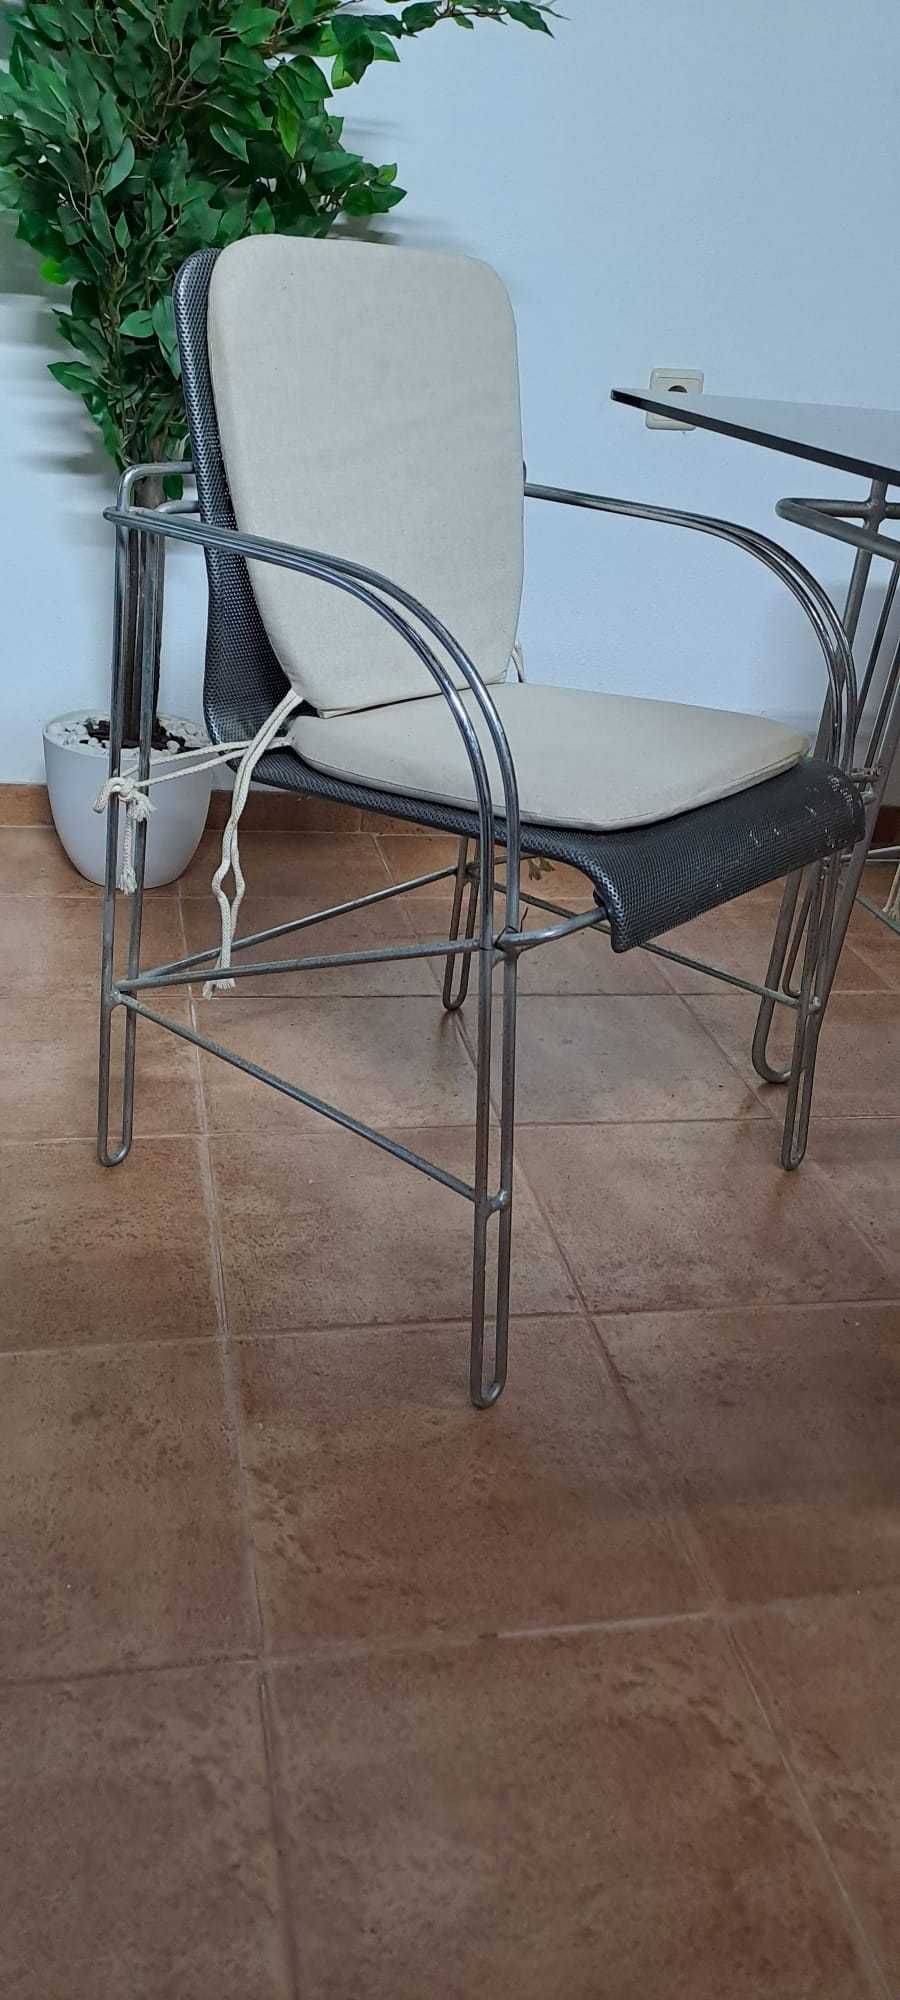 Mesa de jantar + mesa de apoio com tampo em vidro + 14 cadeiras